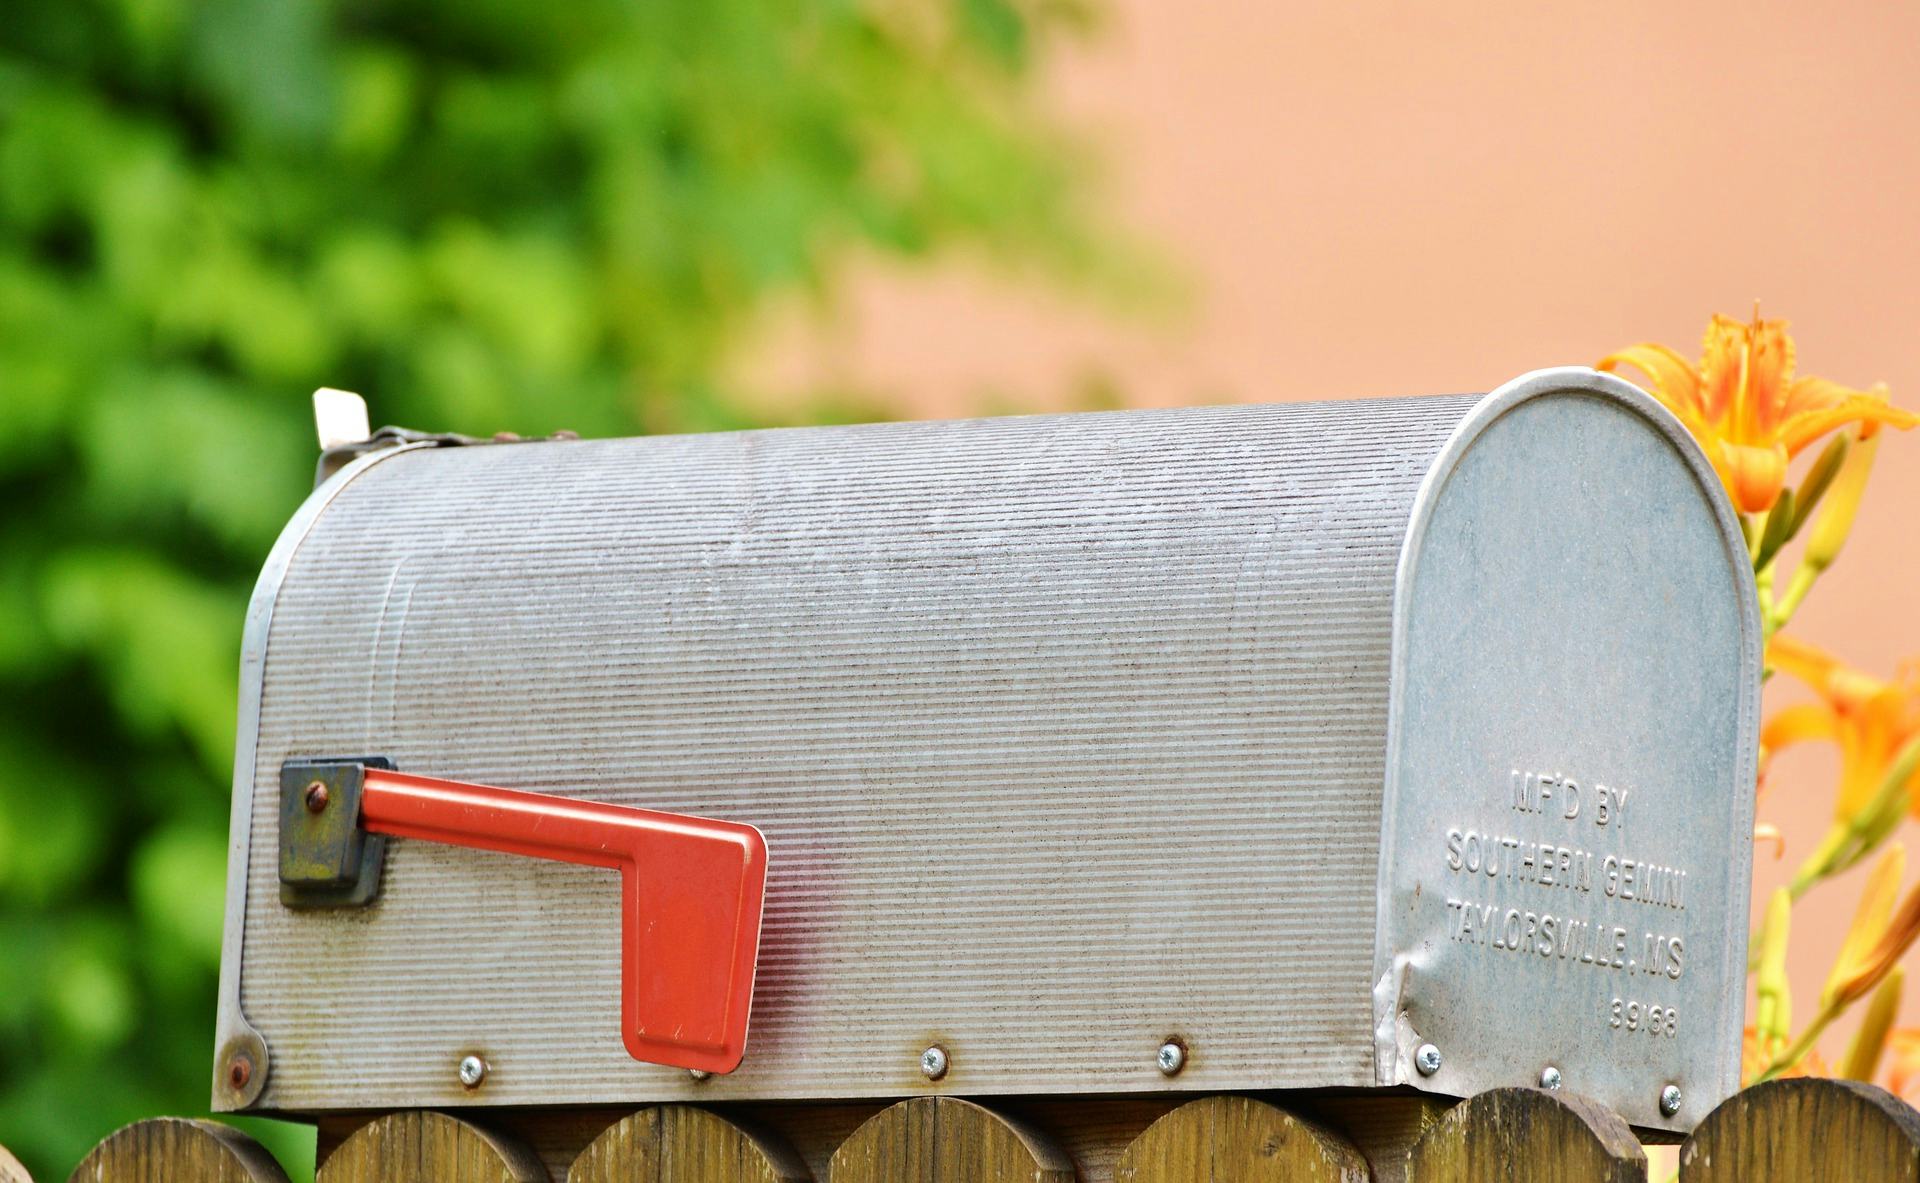 Obvion-klant vraagt tevergeefs om mails in plaats van elke maand een brief